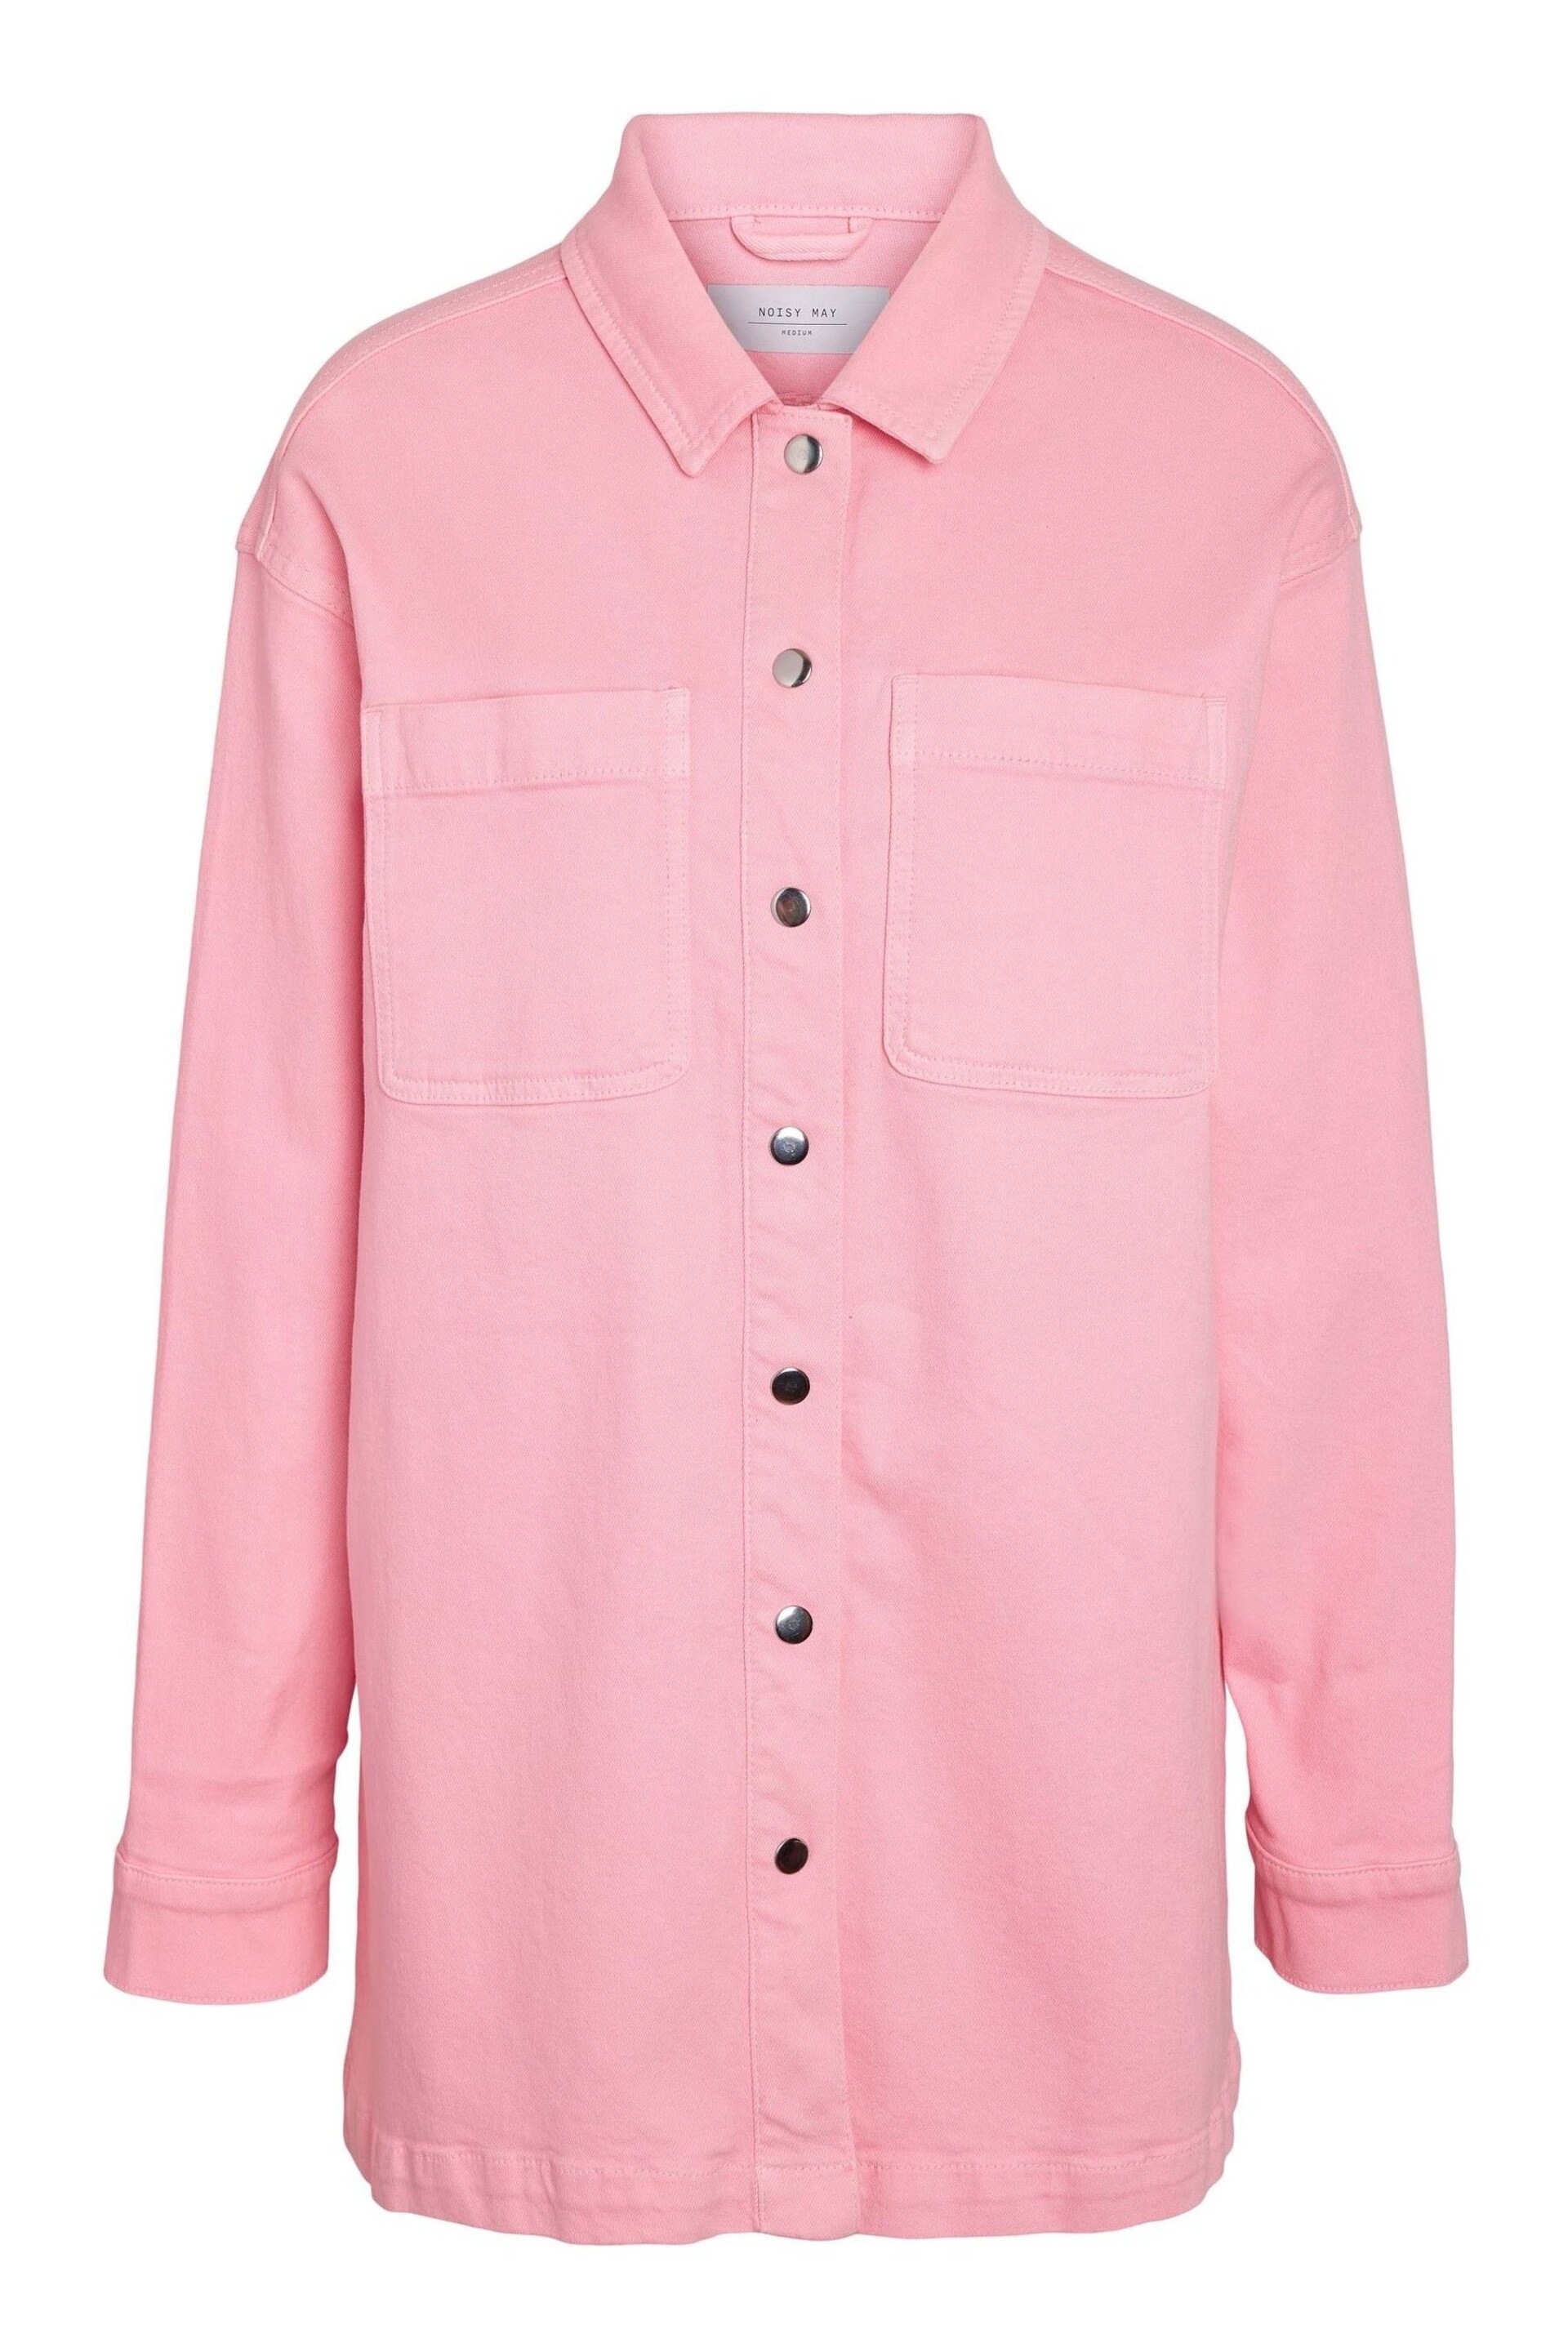 NOISY MAY Pink Oversized Denim Shacket - Image 5 of 5